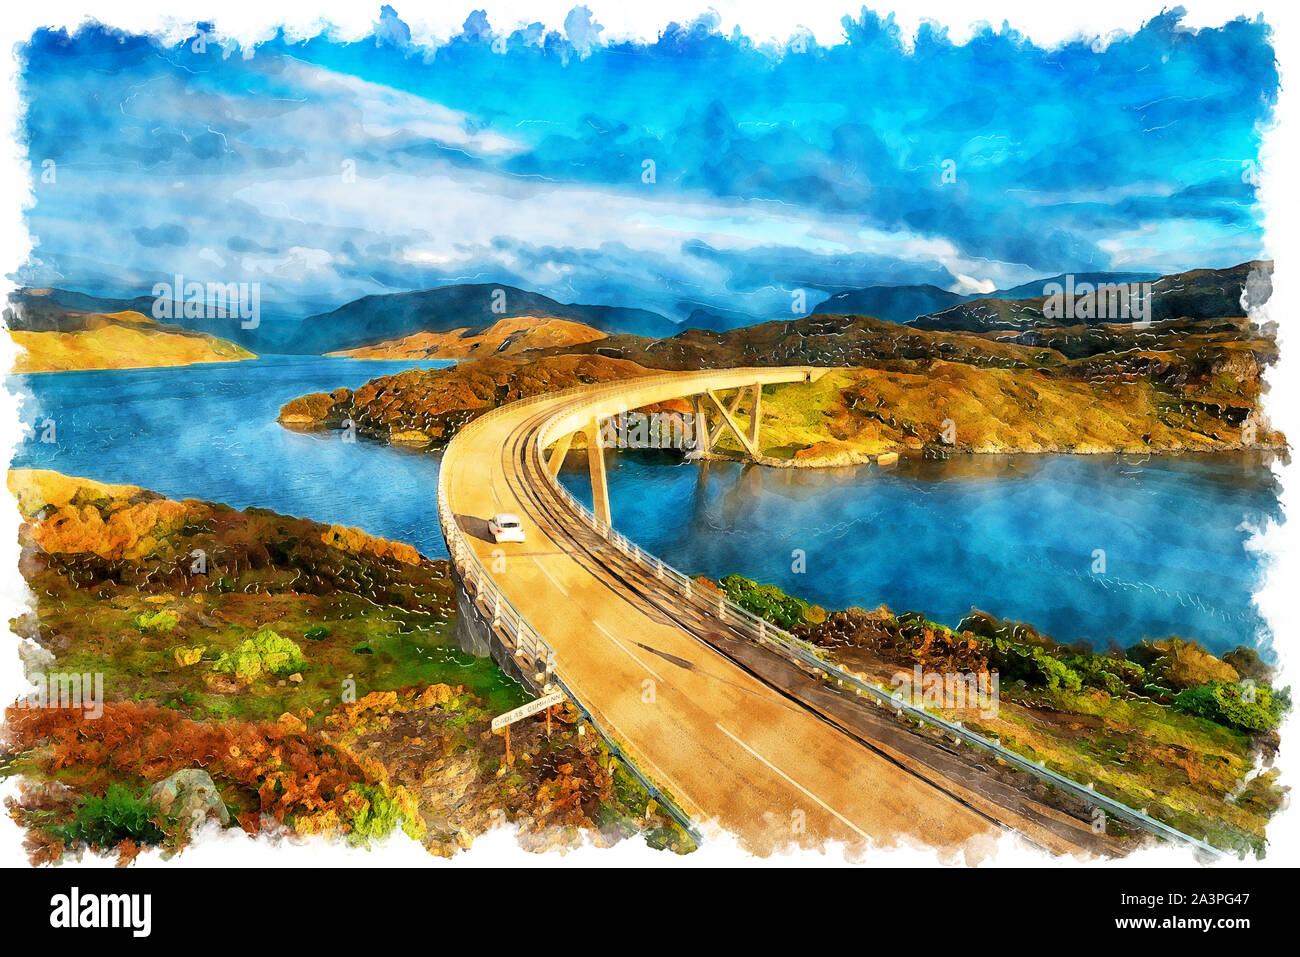 Aquarellmalerei Der Kylesku Brücke über Loch ein 'Chàirn Bhàin in den schottischen Highlands Stockfoto